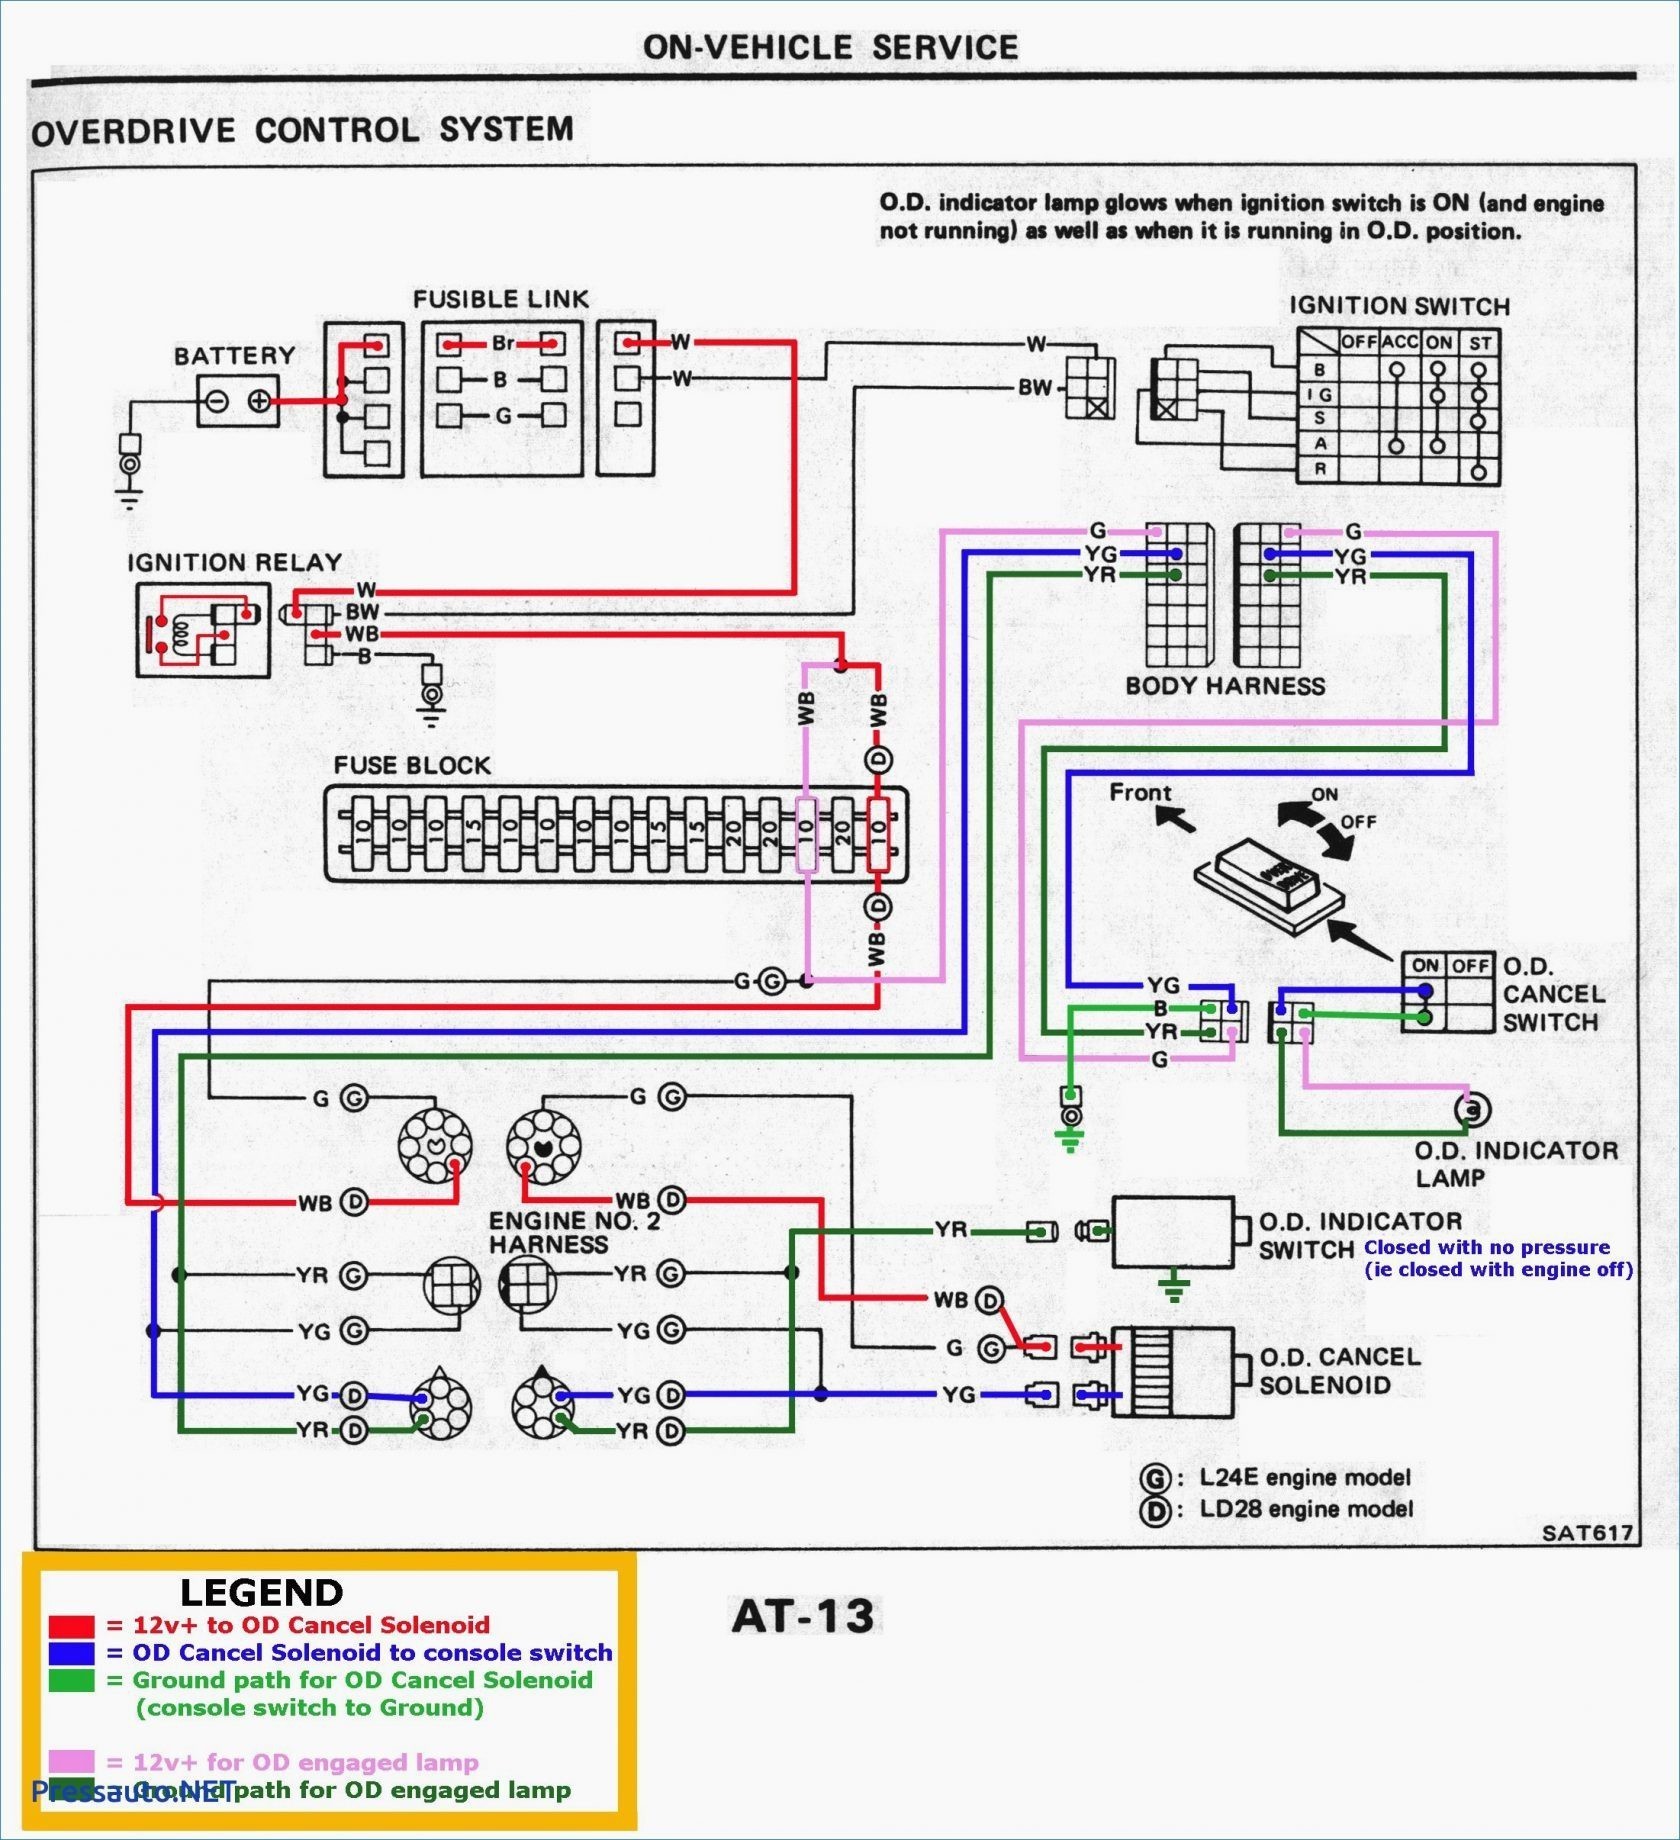 2002 Mazda Tribute Engine Diagram Mazda Alternator Wiring Wiring Diagram today Of 2002 Mazda Tribute Engine Diagram